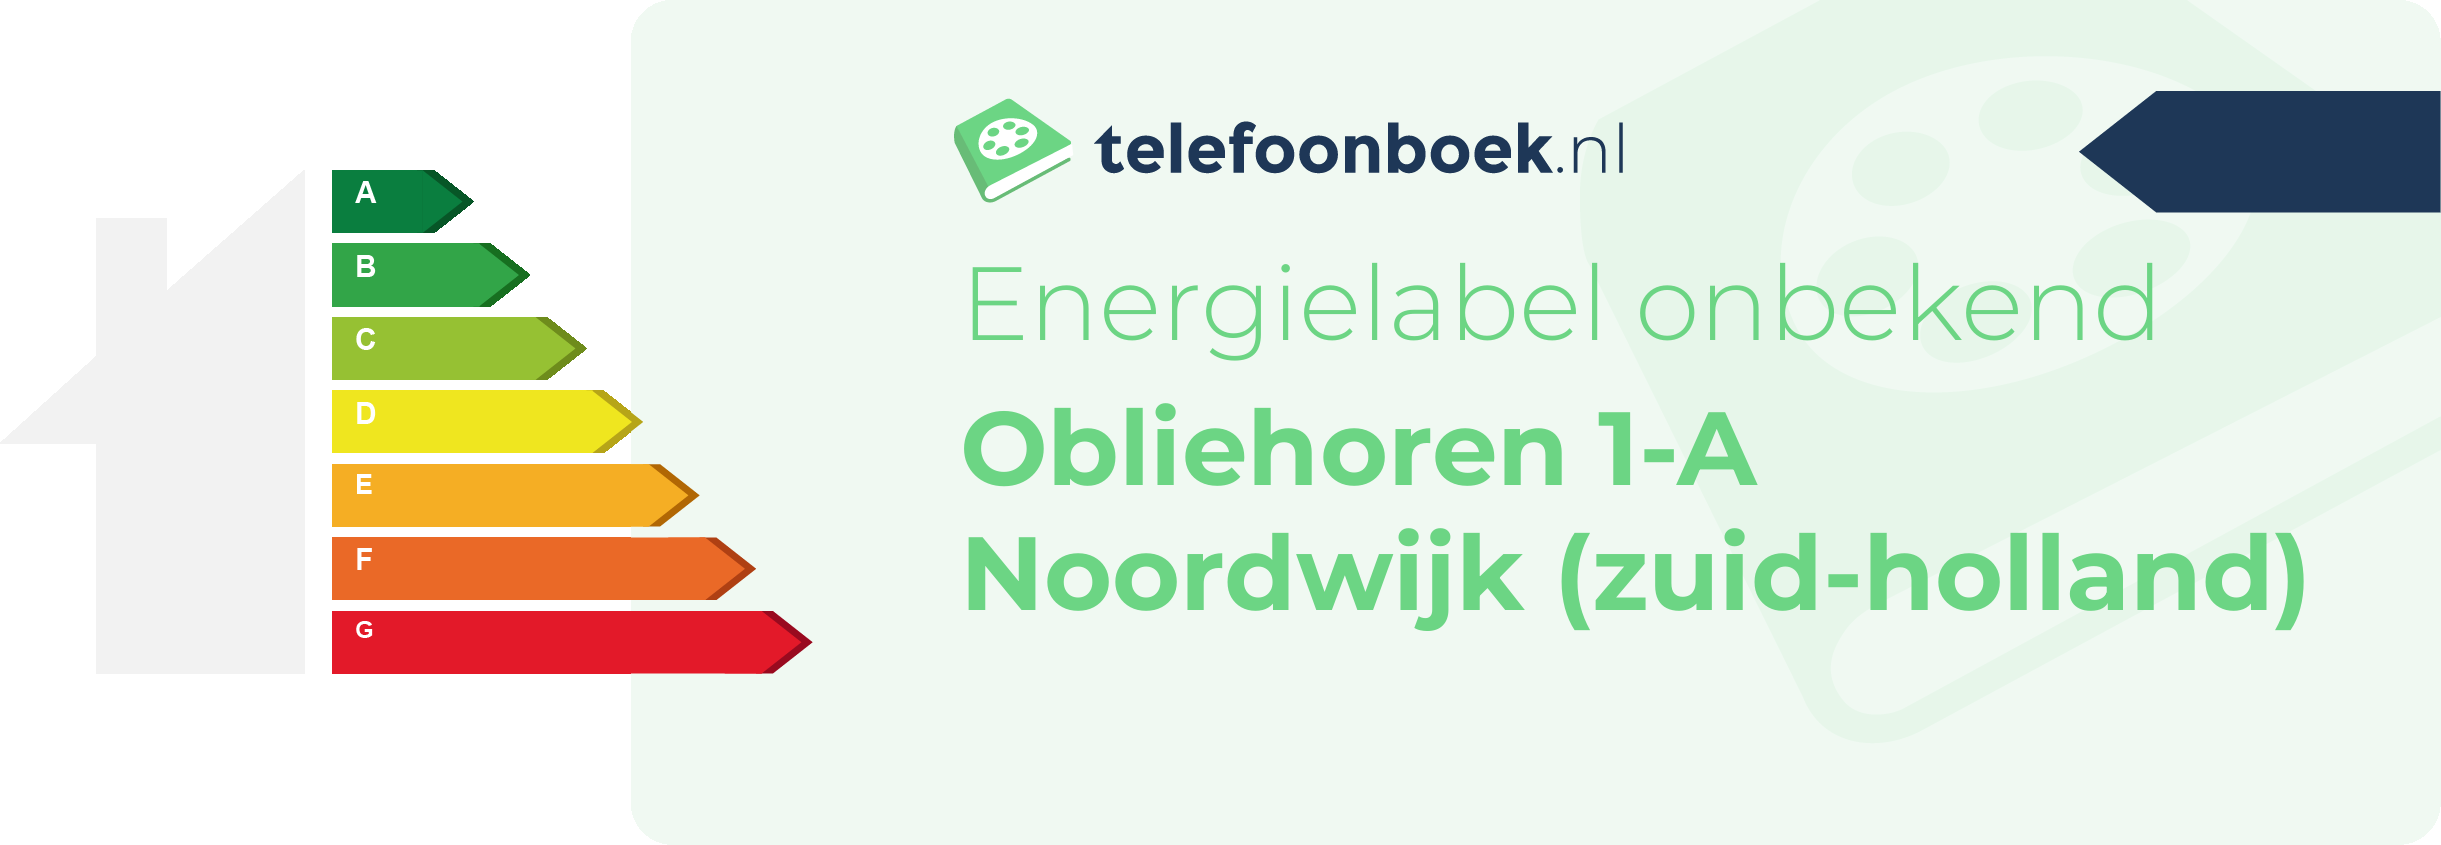 Energielabel Obliehoren 1-A Noordwijk (Zuid-Holland)